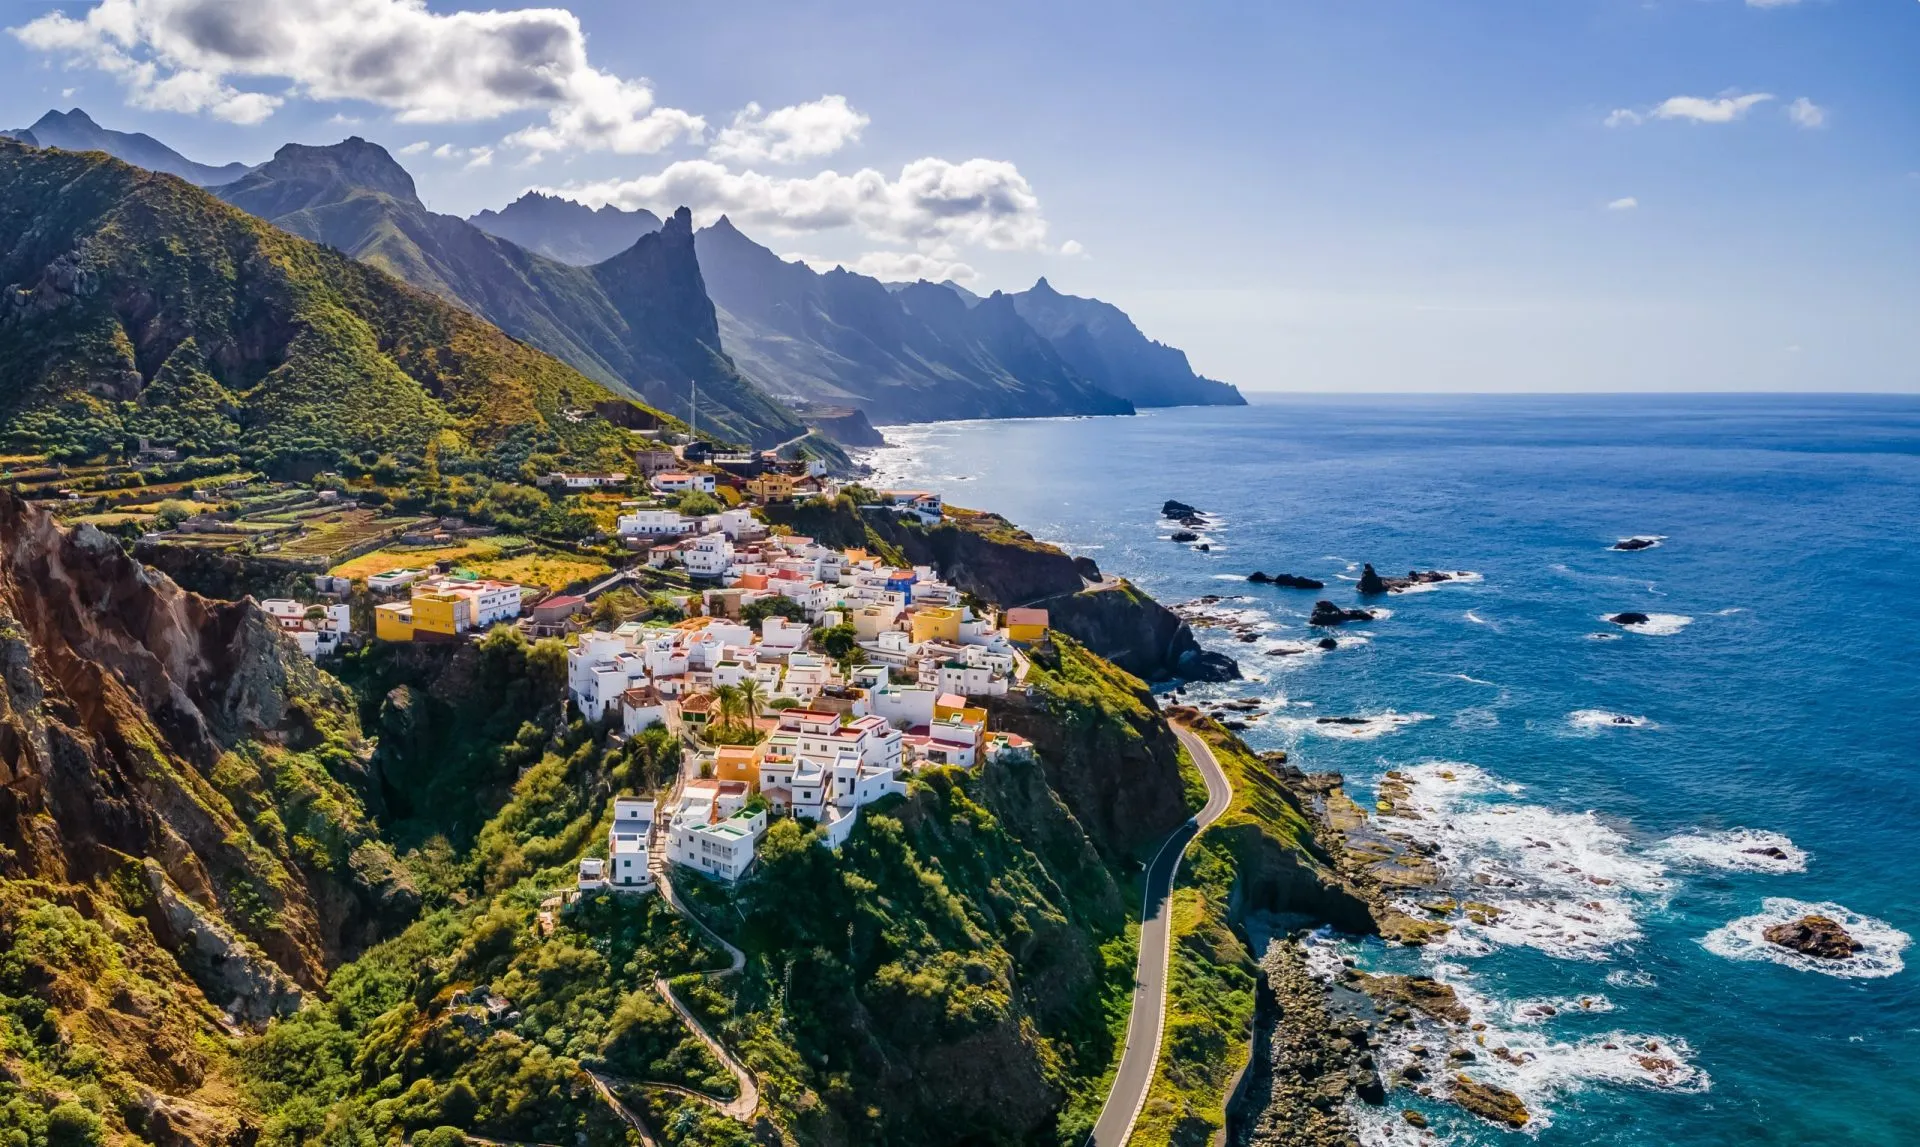 Landskap med kustby på Teneriffa, Kanarieöarna, Spanien